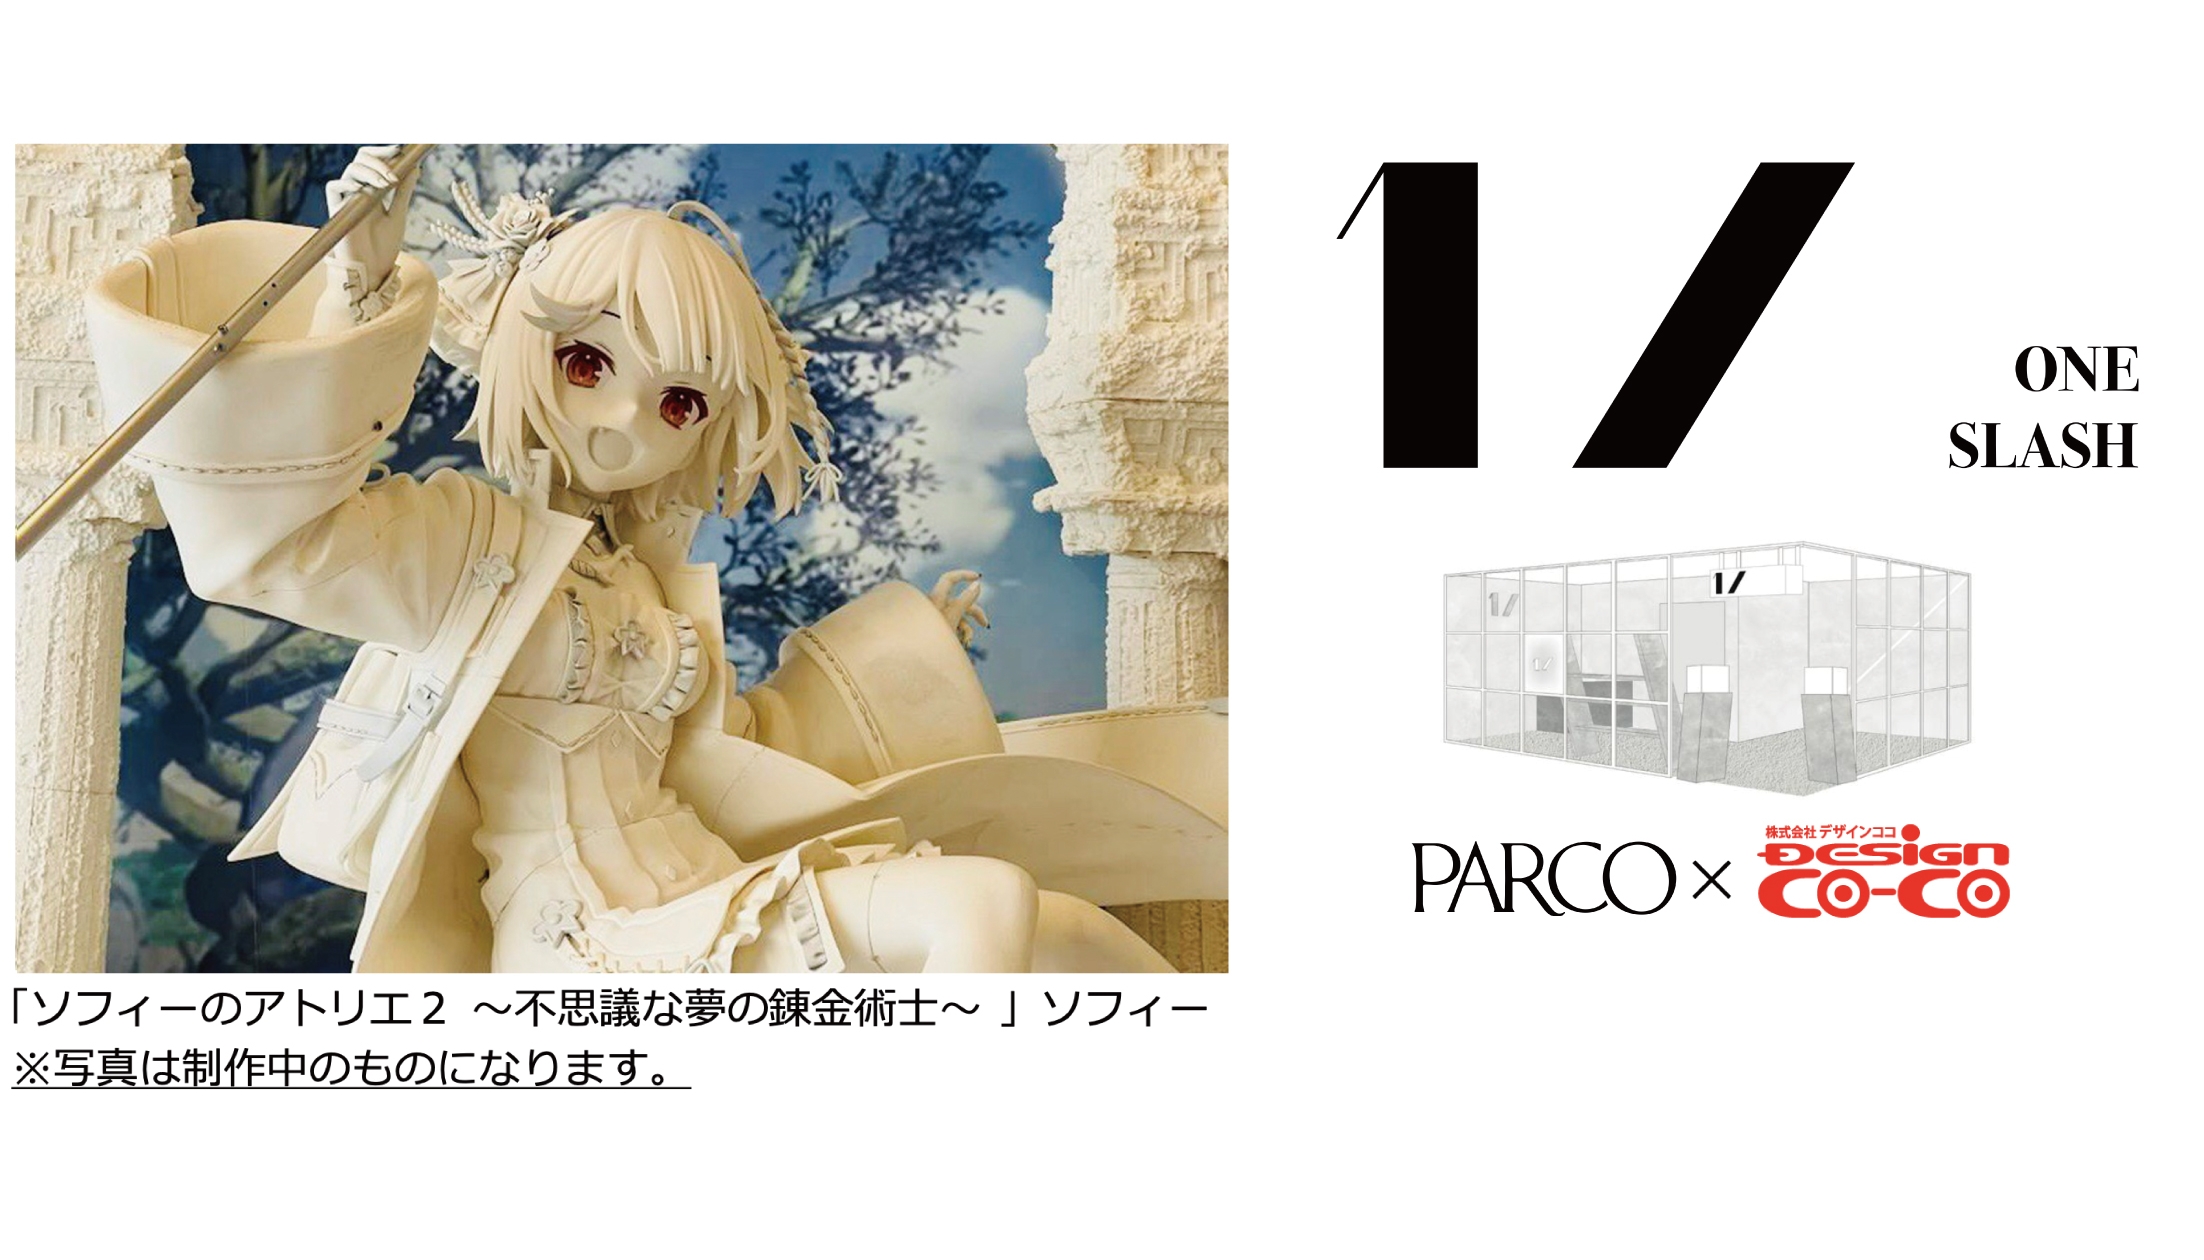 渋谷PARCOアートフィギュアギャラリー 「1/ ONE SLASH」オープン、第一